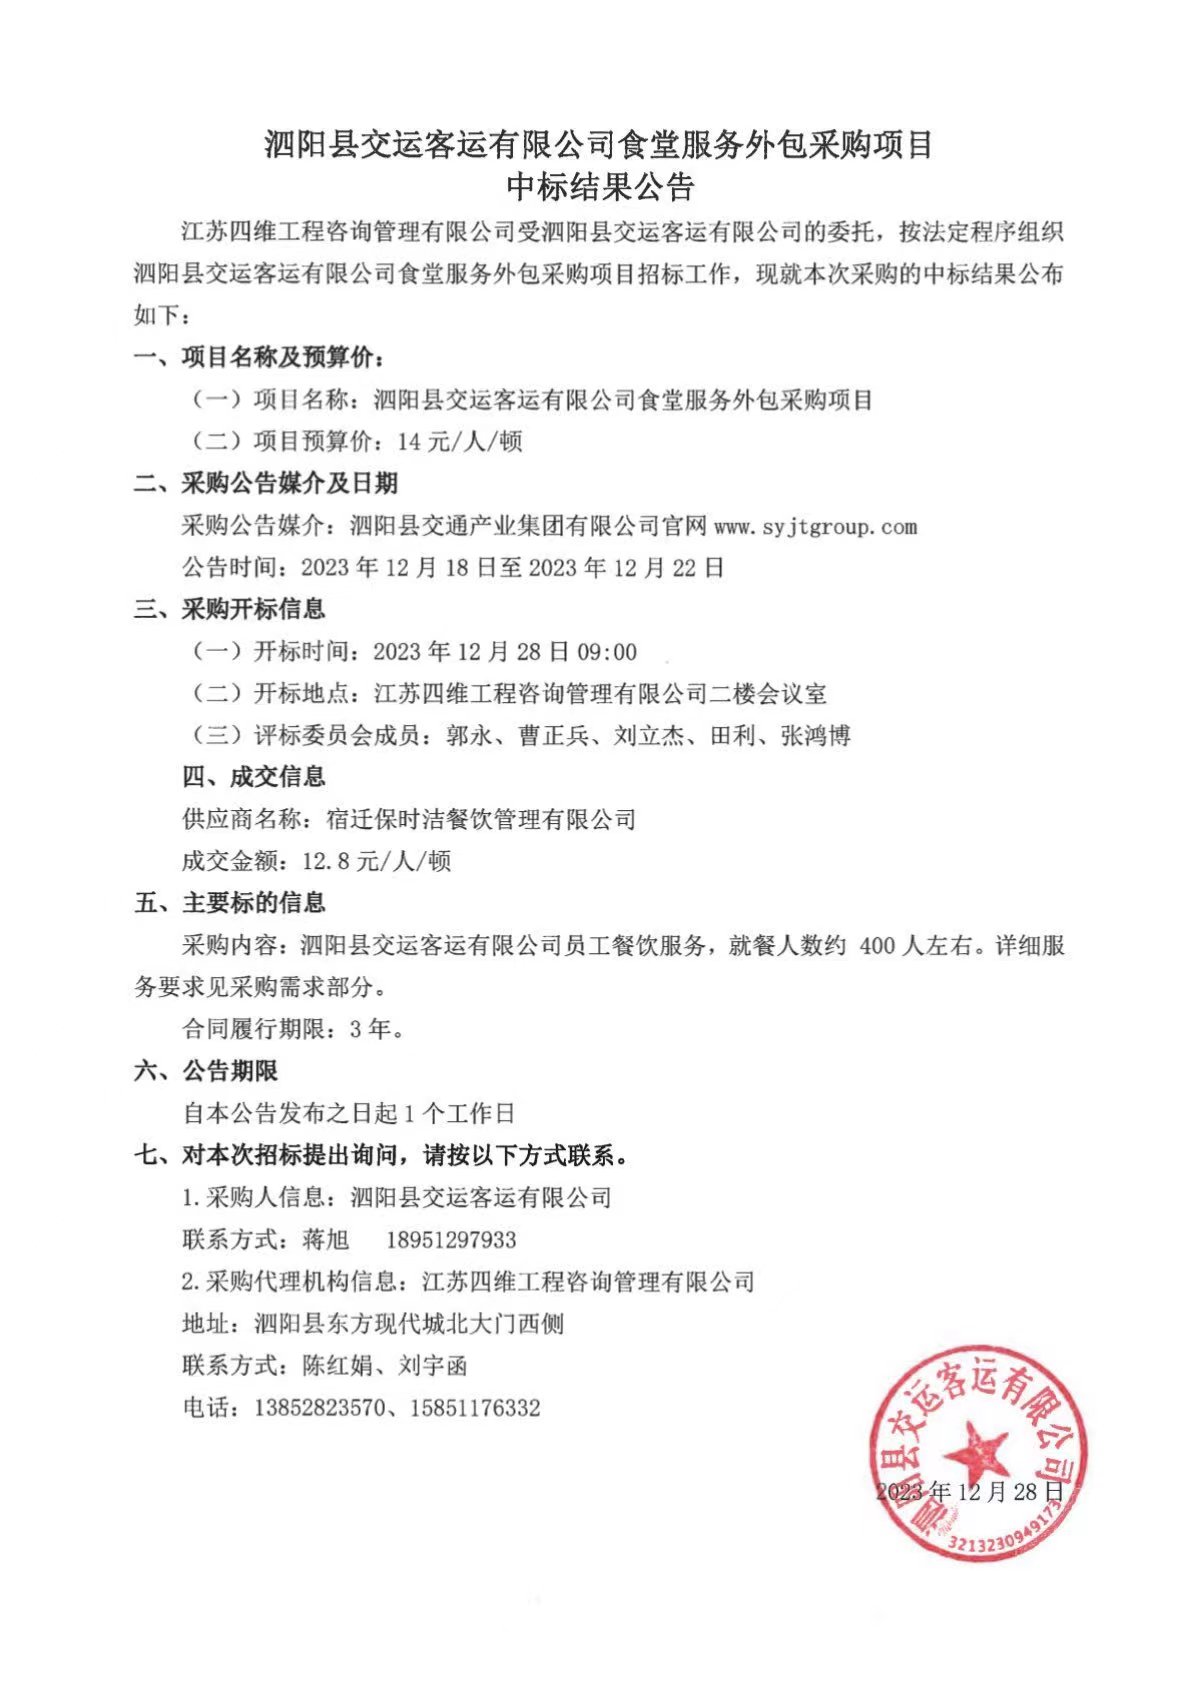 泗阳县交运客运有限公司食堂服务外包采购项目中标结果公告